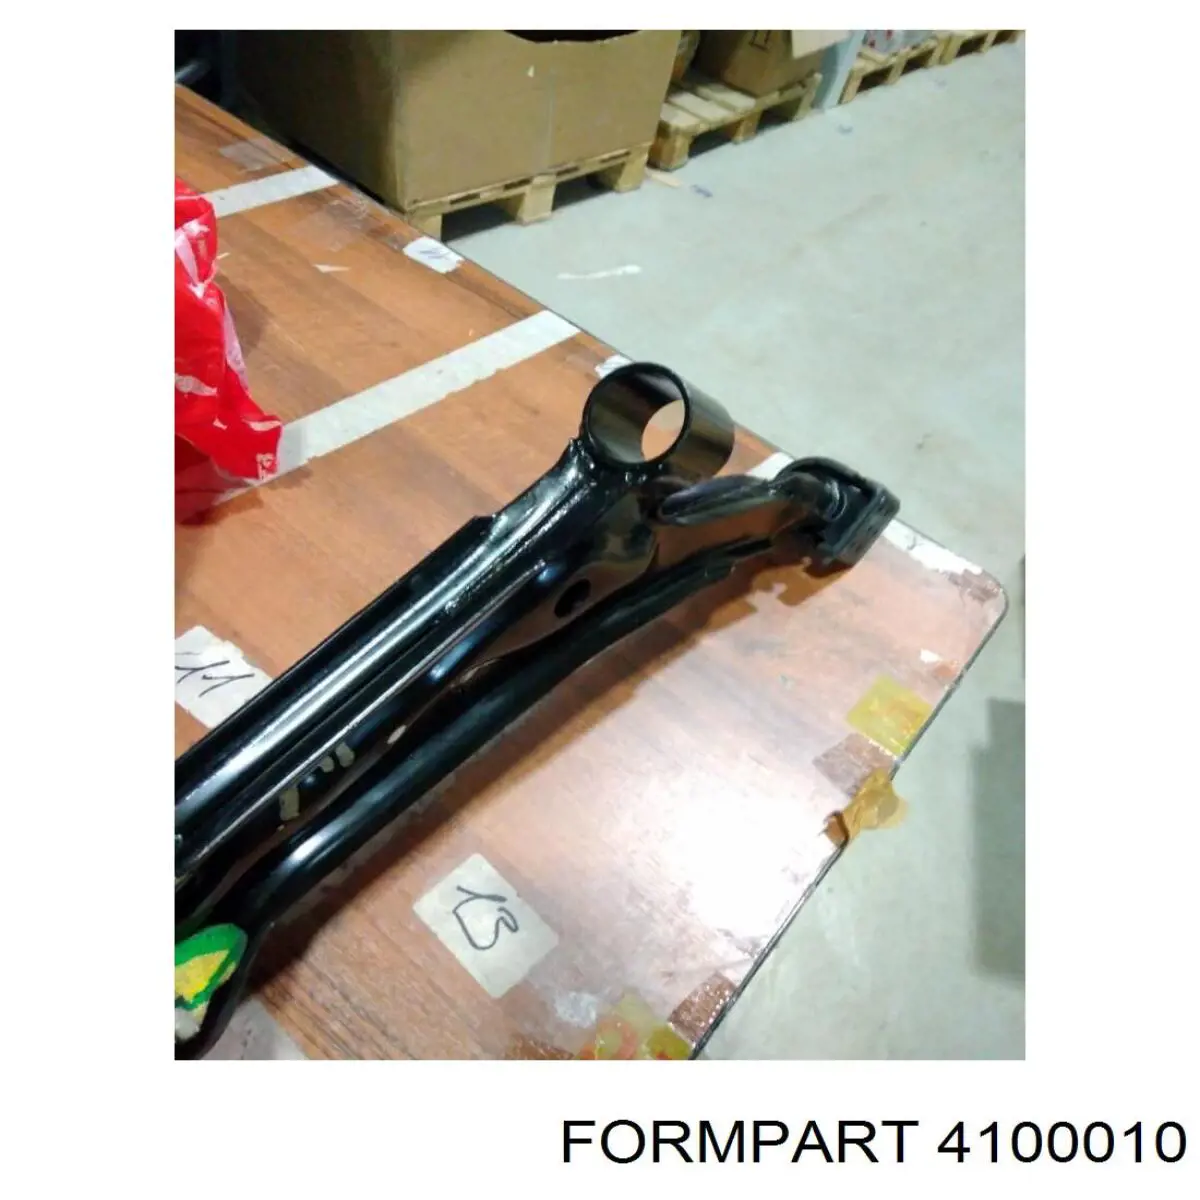 4100010 Formpart/Otoform silentblock de suspensión delantero inferior